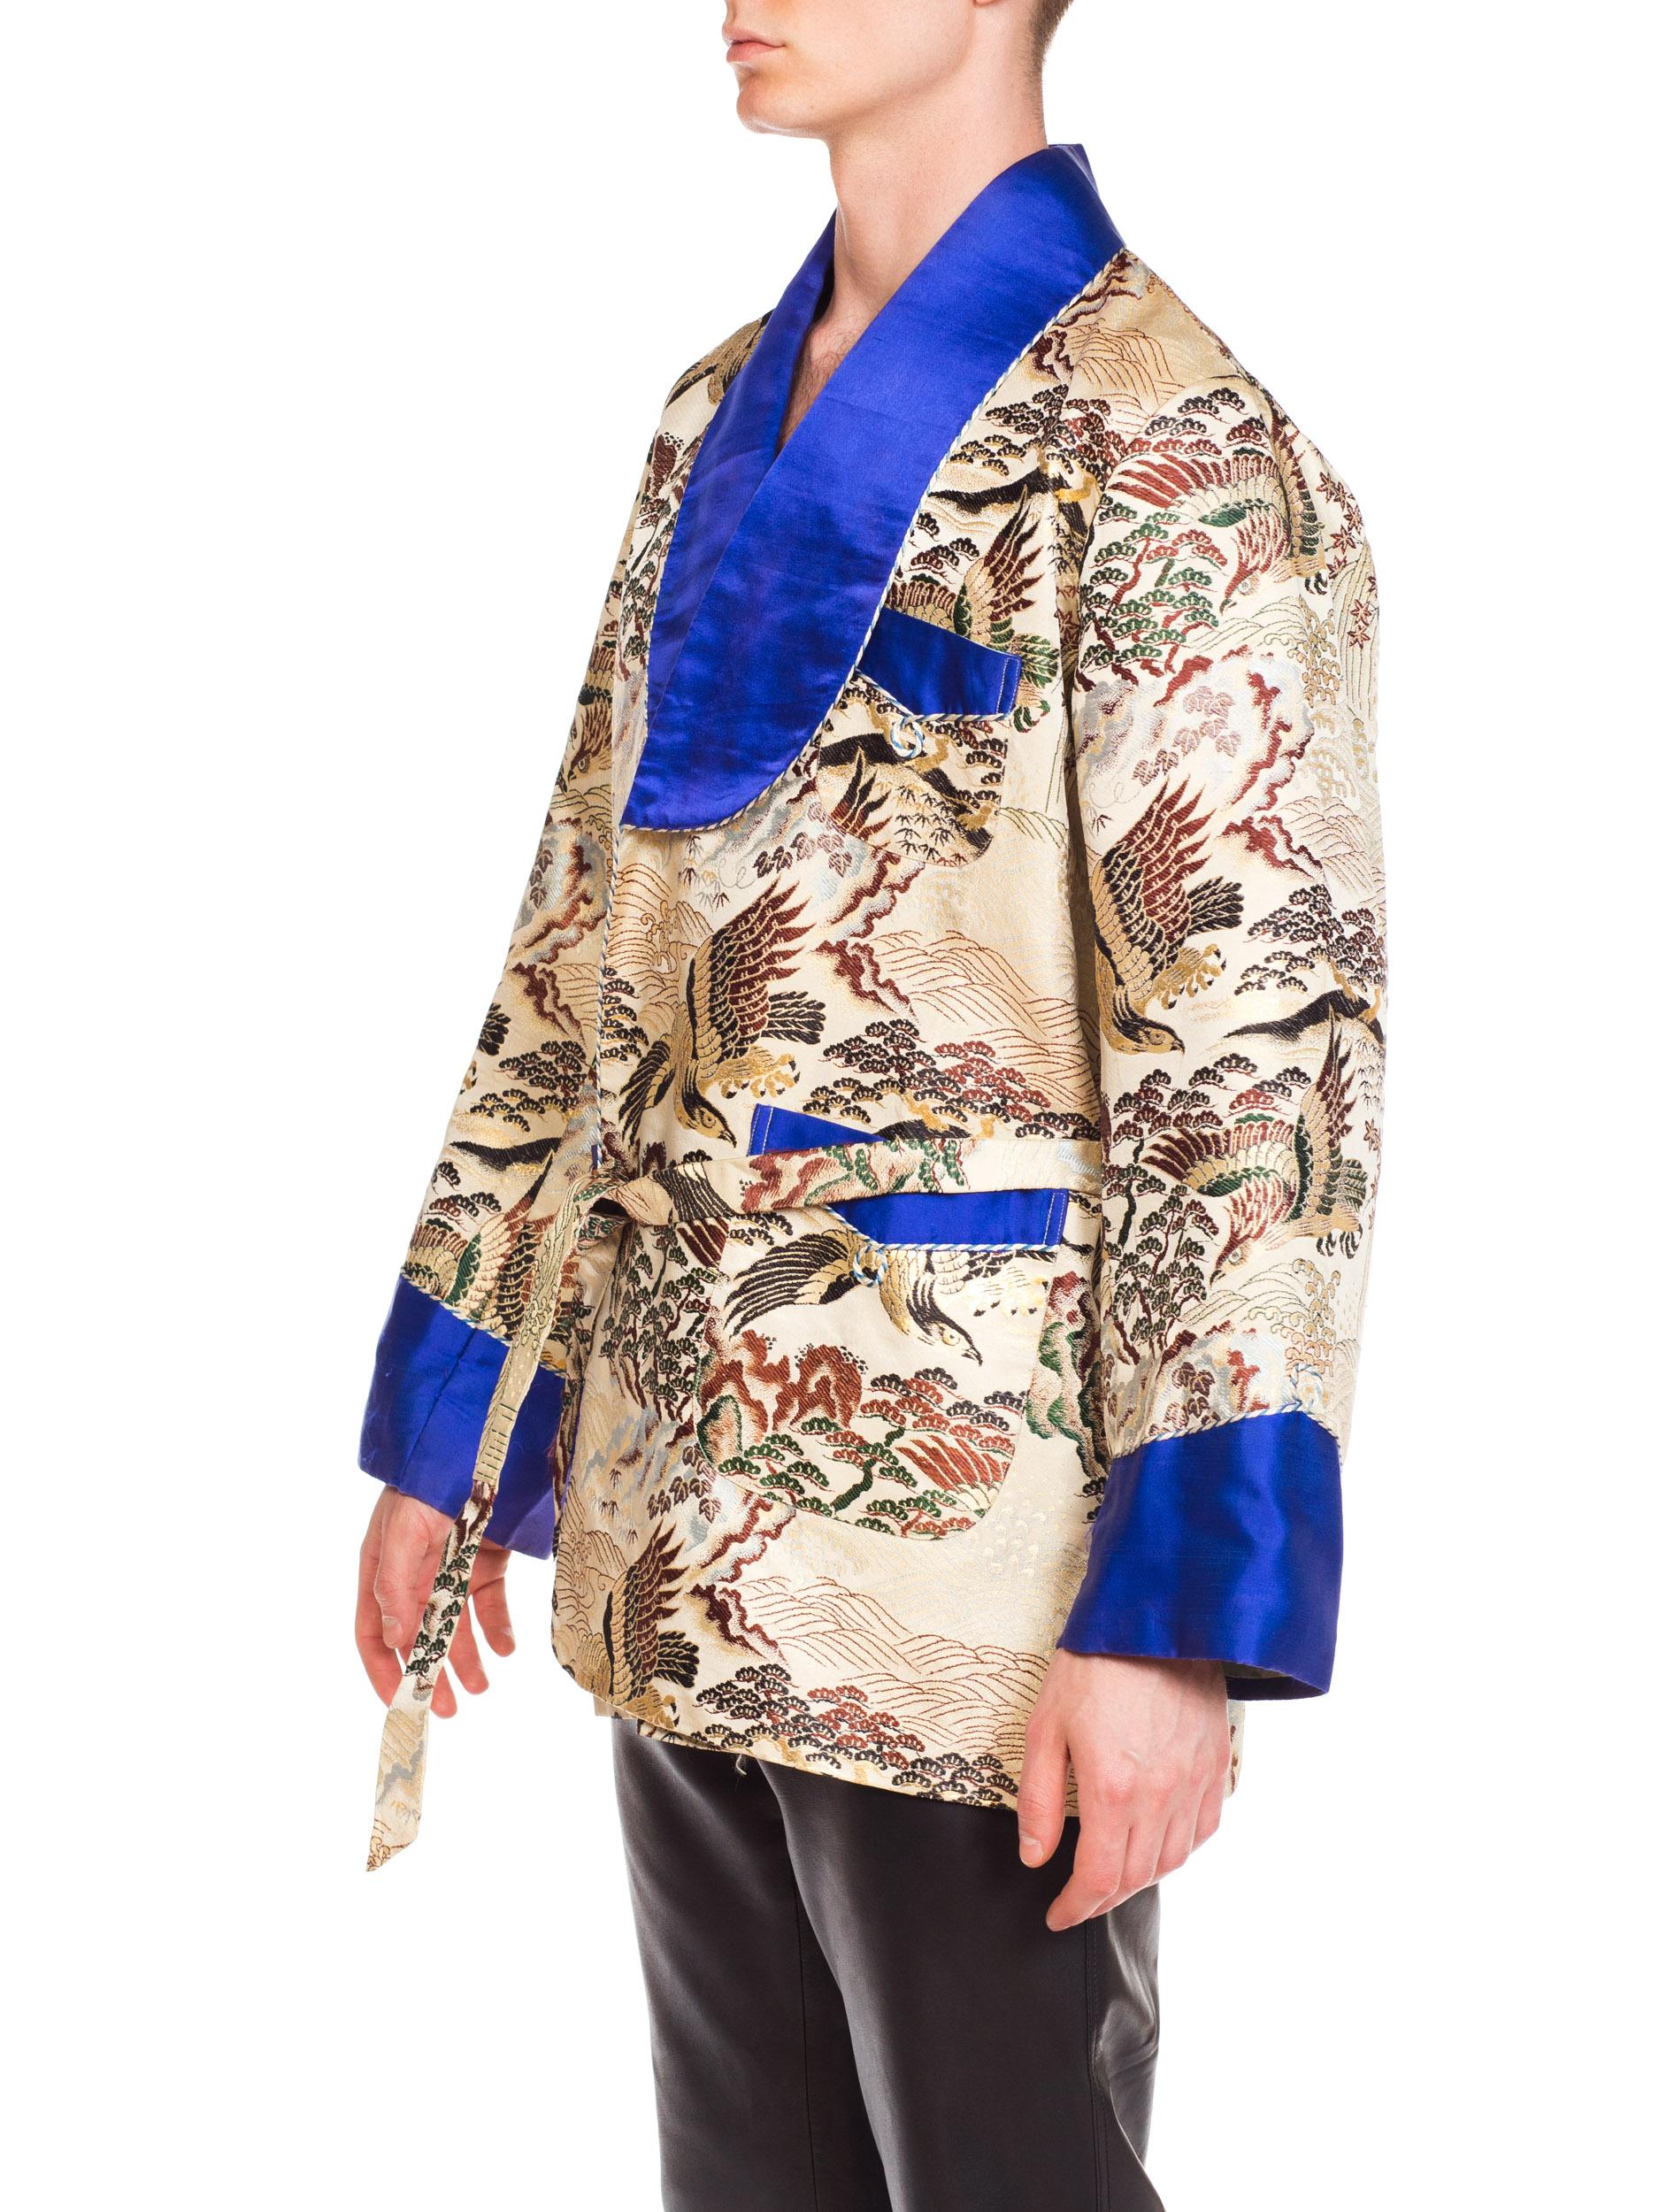 1970s Asian Kimono Scenic Smoking Jacket with Blue Satin Trim